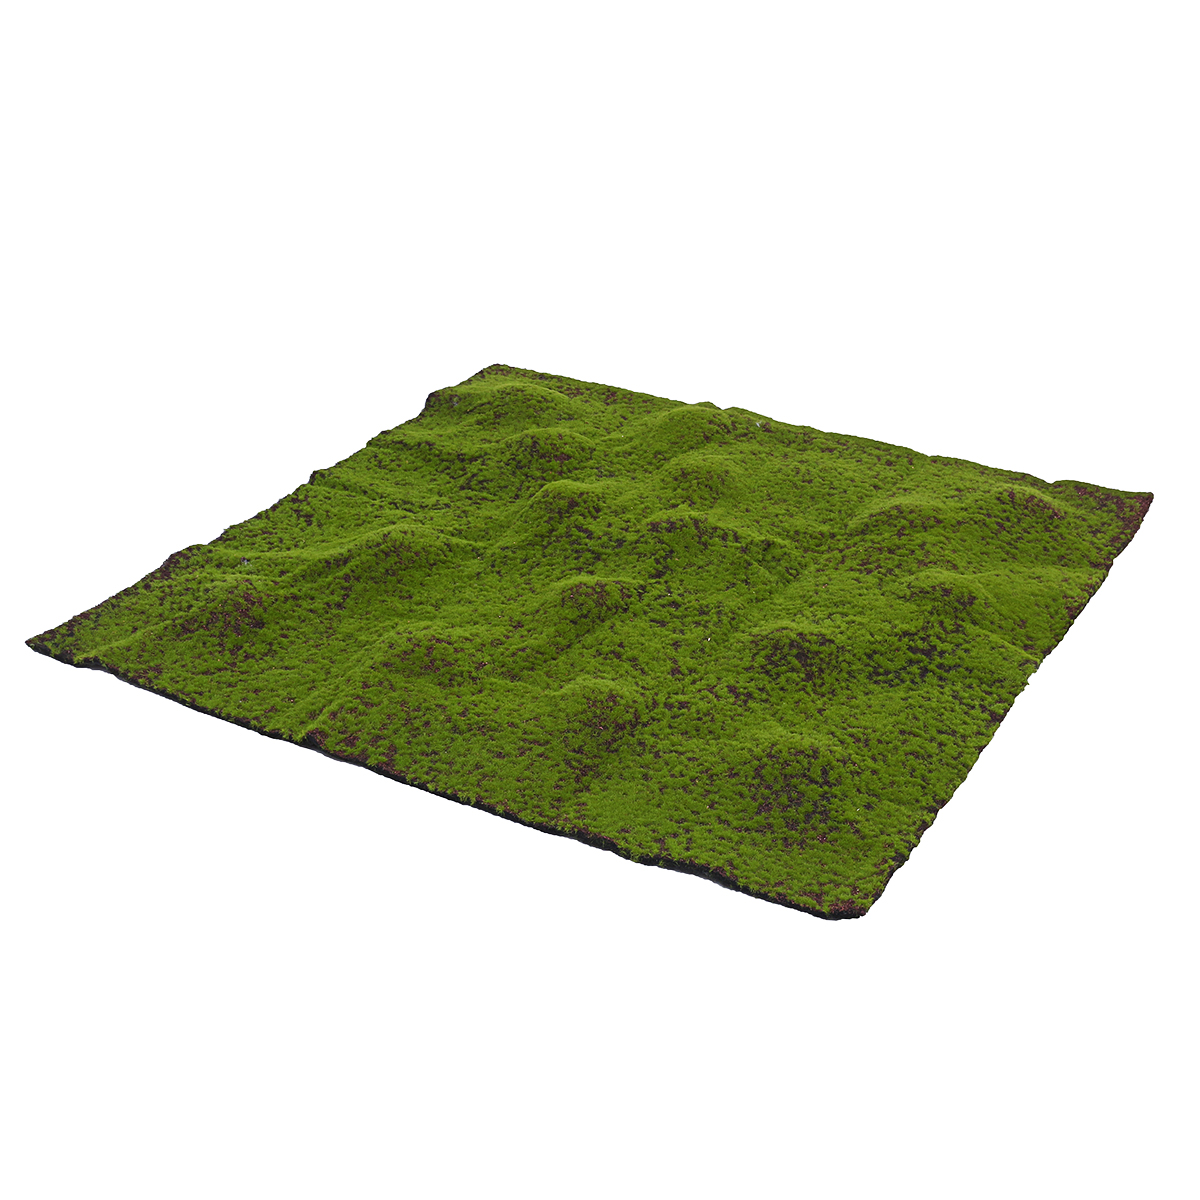 Artificial-Moss-Grass-Synthetic-Mat-Landscape-Lawn-Pet-Dog-Turf-Garden-Yard-Floor-Mat-1636381-11